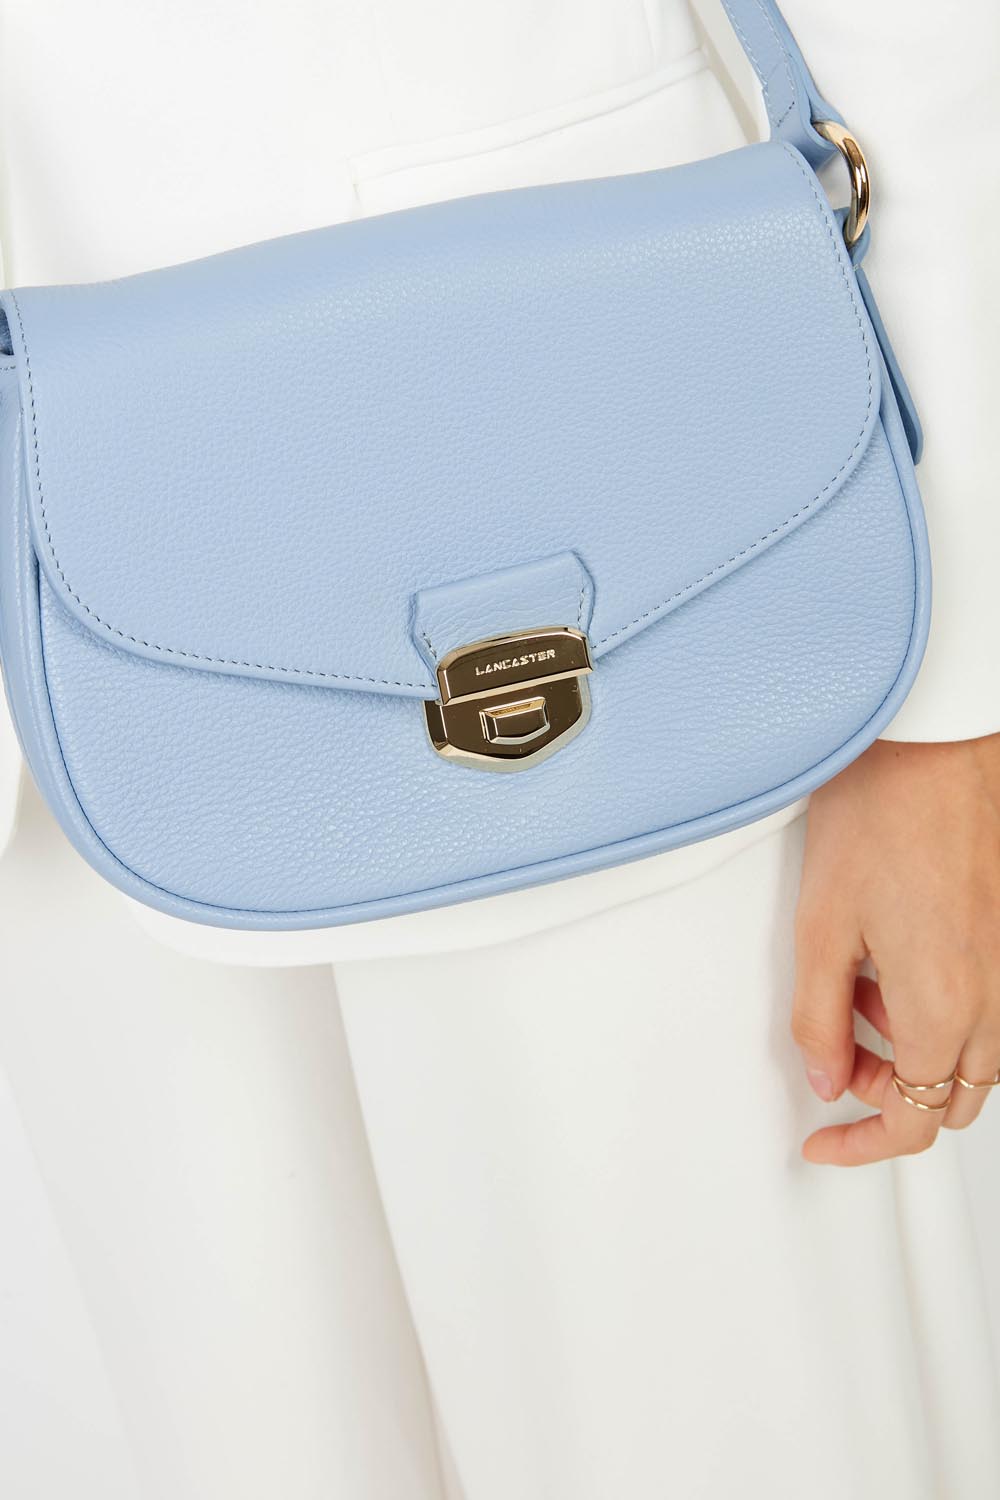 sac trotteur - foulonné milano #couleur_bleu-ciel